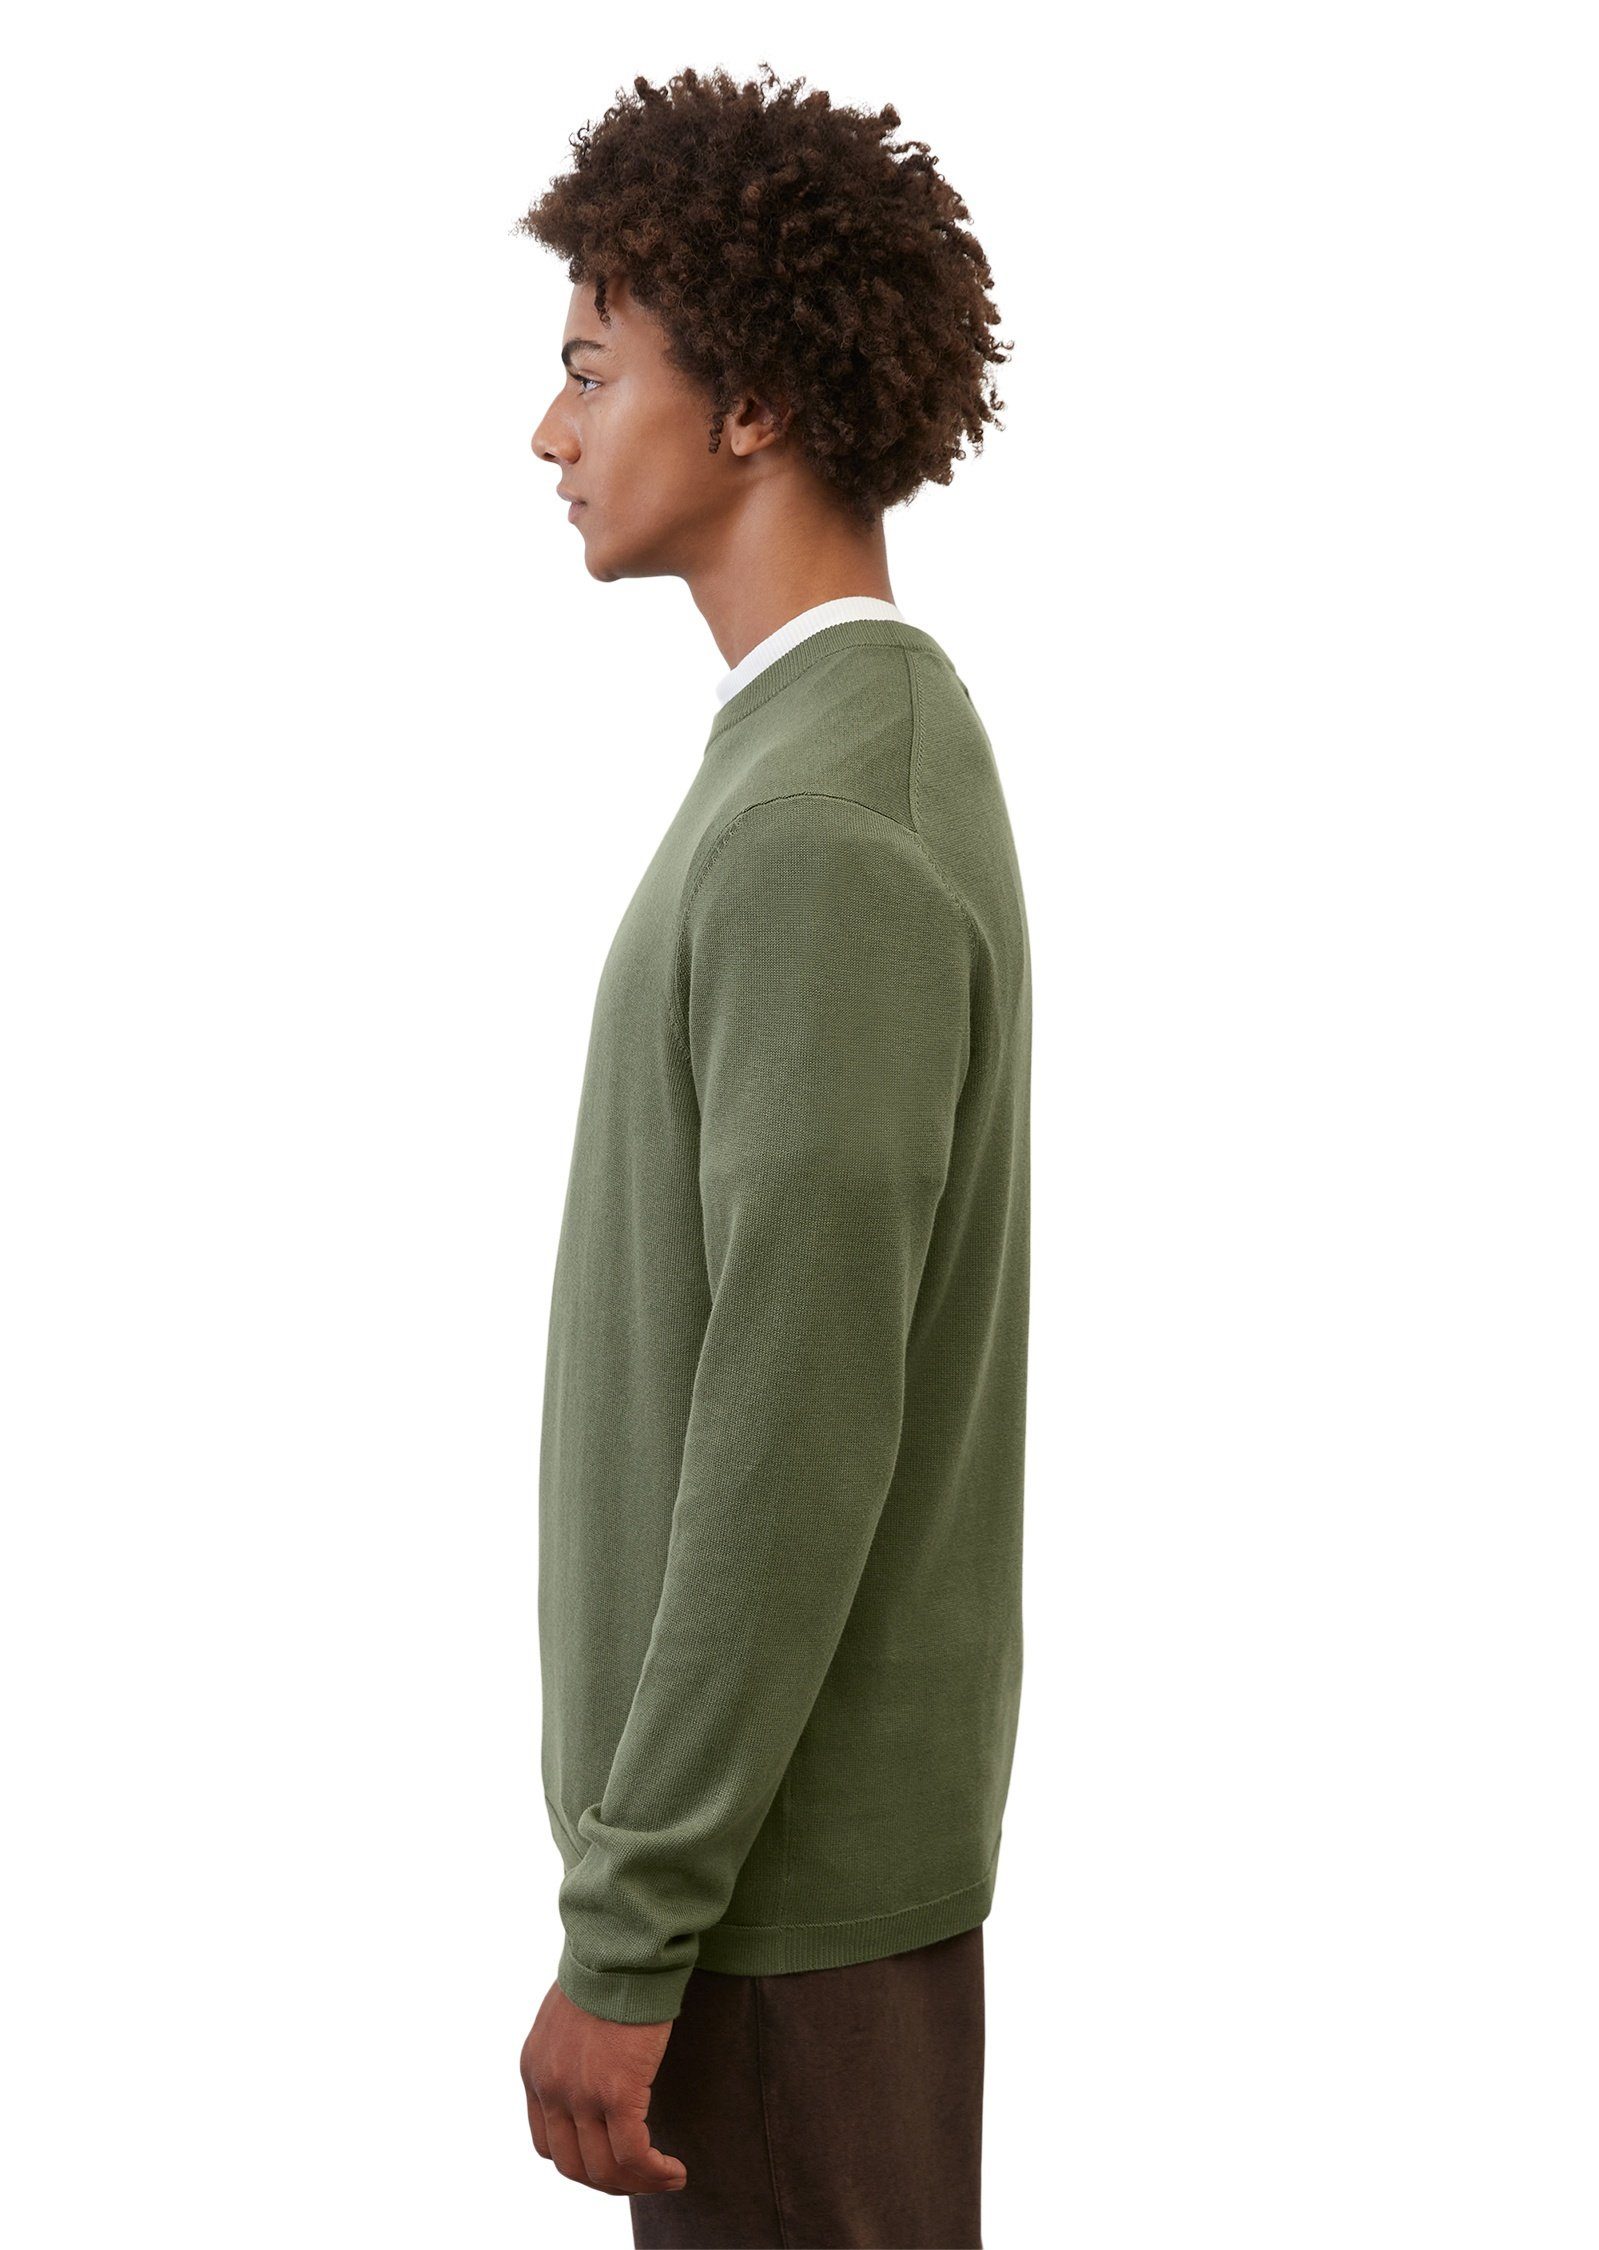 Marc O'Polo Rundhalspullover Cotton-Cashmere-Qualität grün in softer